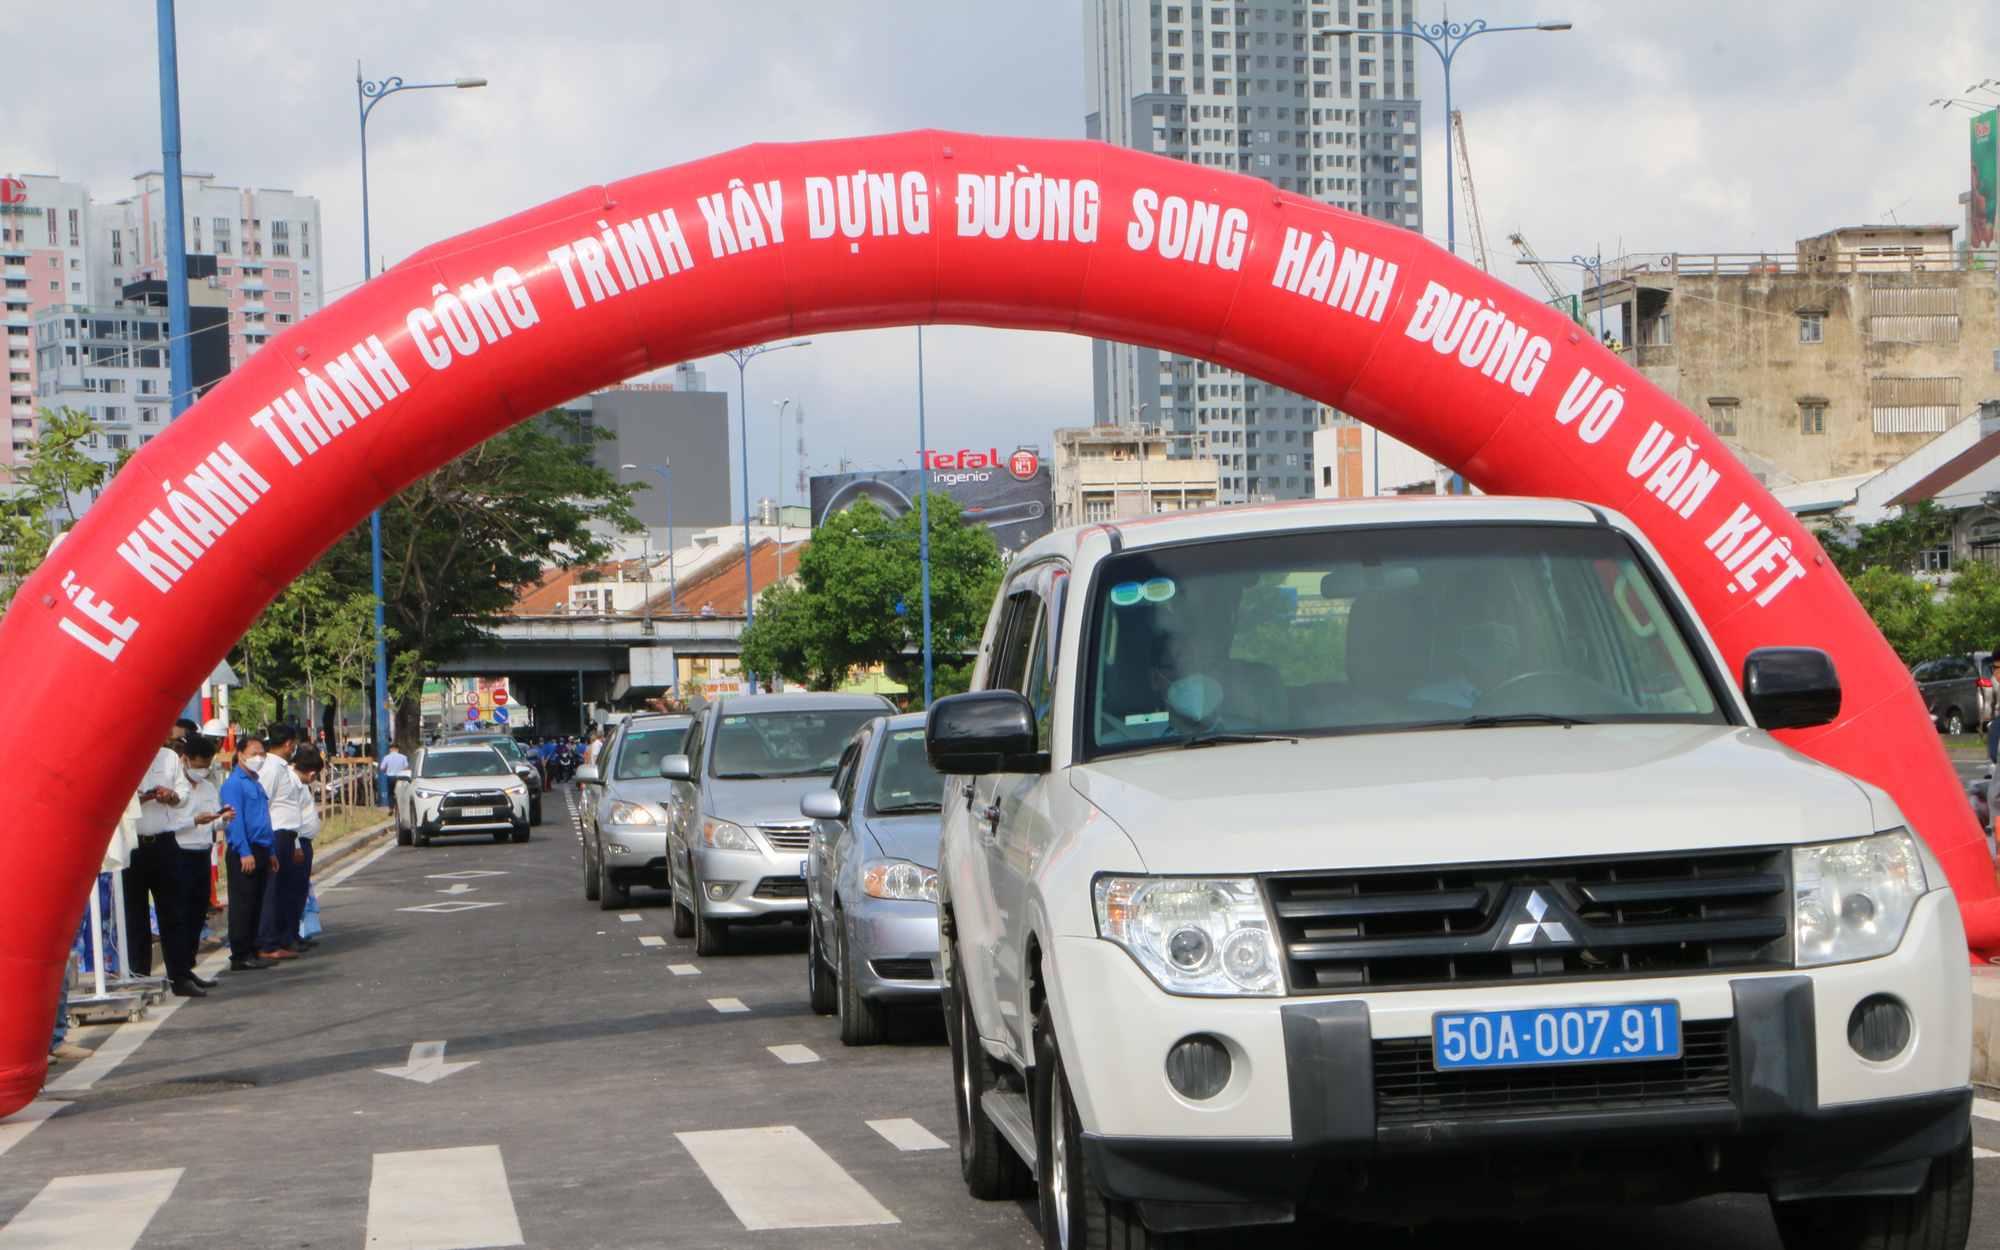 Đường song hành đại lộ Võ Văn Kiệt thông xe: Giải quyết ùn ứ, mất an toàn giao thông 